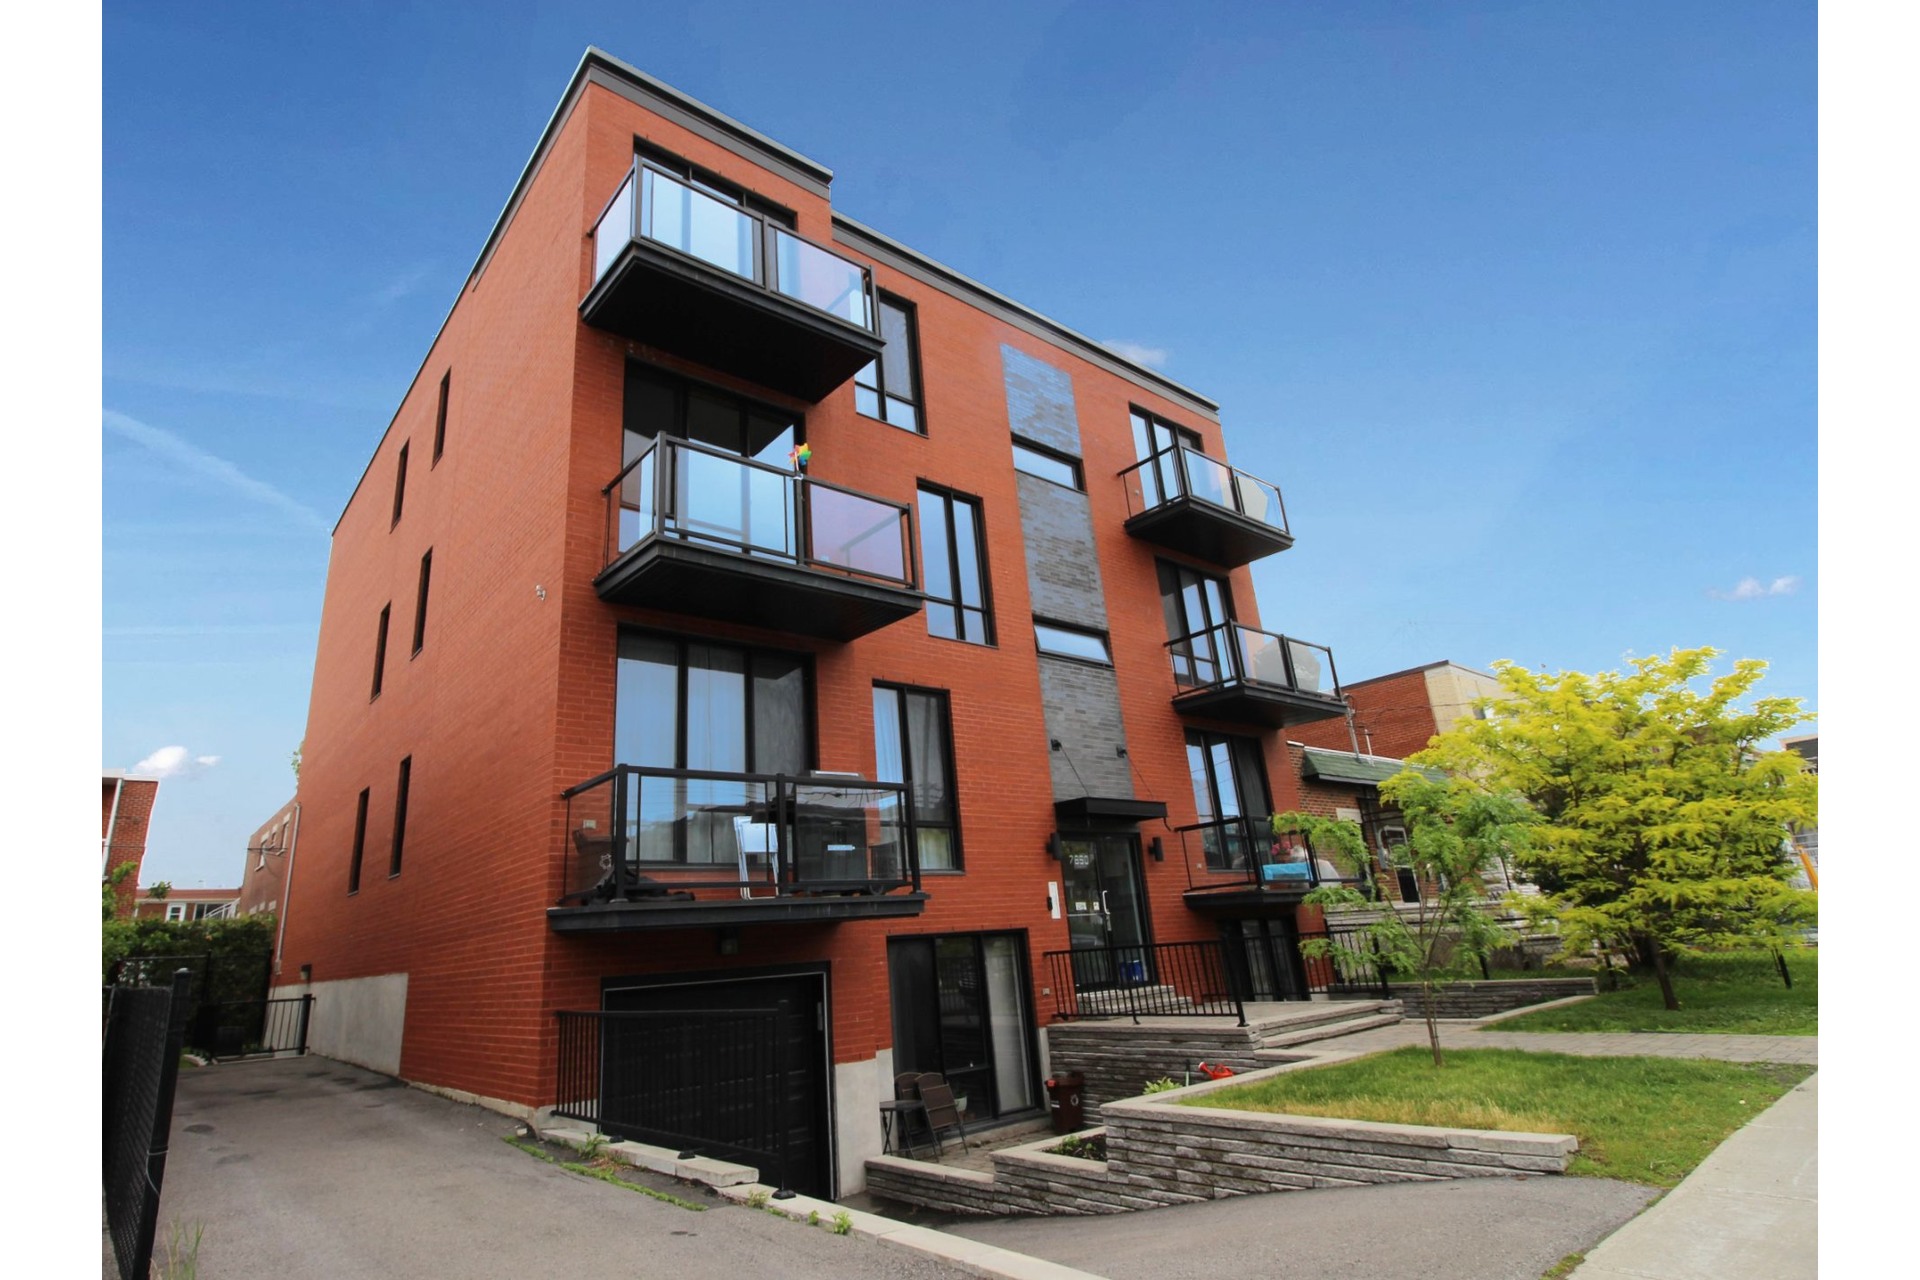 image 2 - Apartment For sale Villeray/Saint-Michel/Parc-Extension Montréal  - 6 rooms